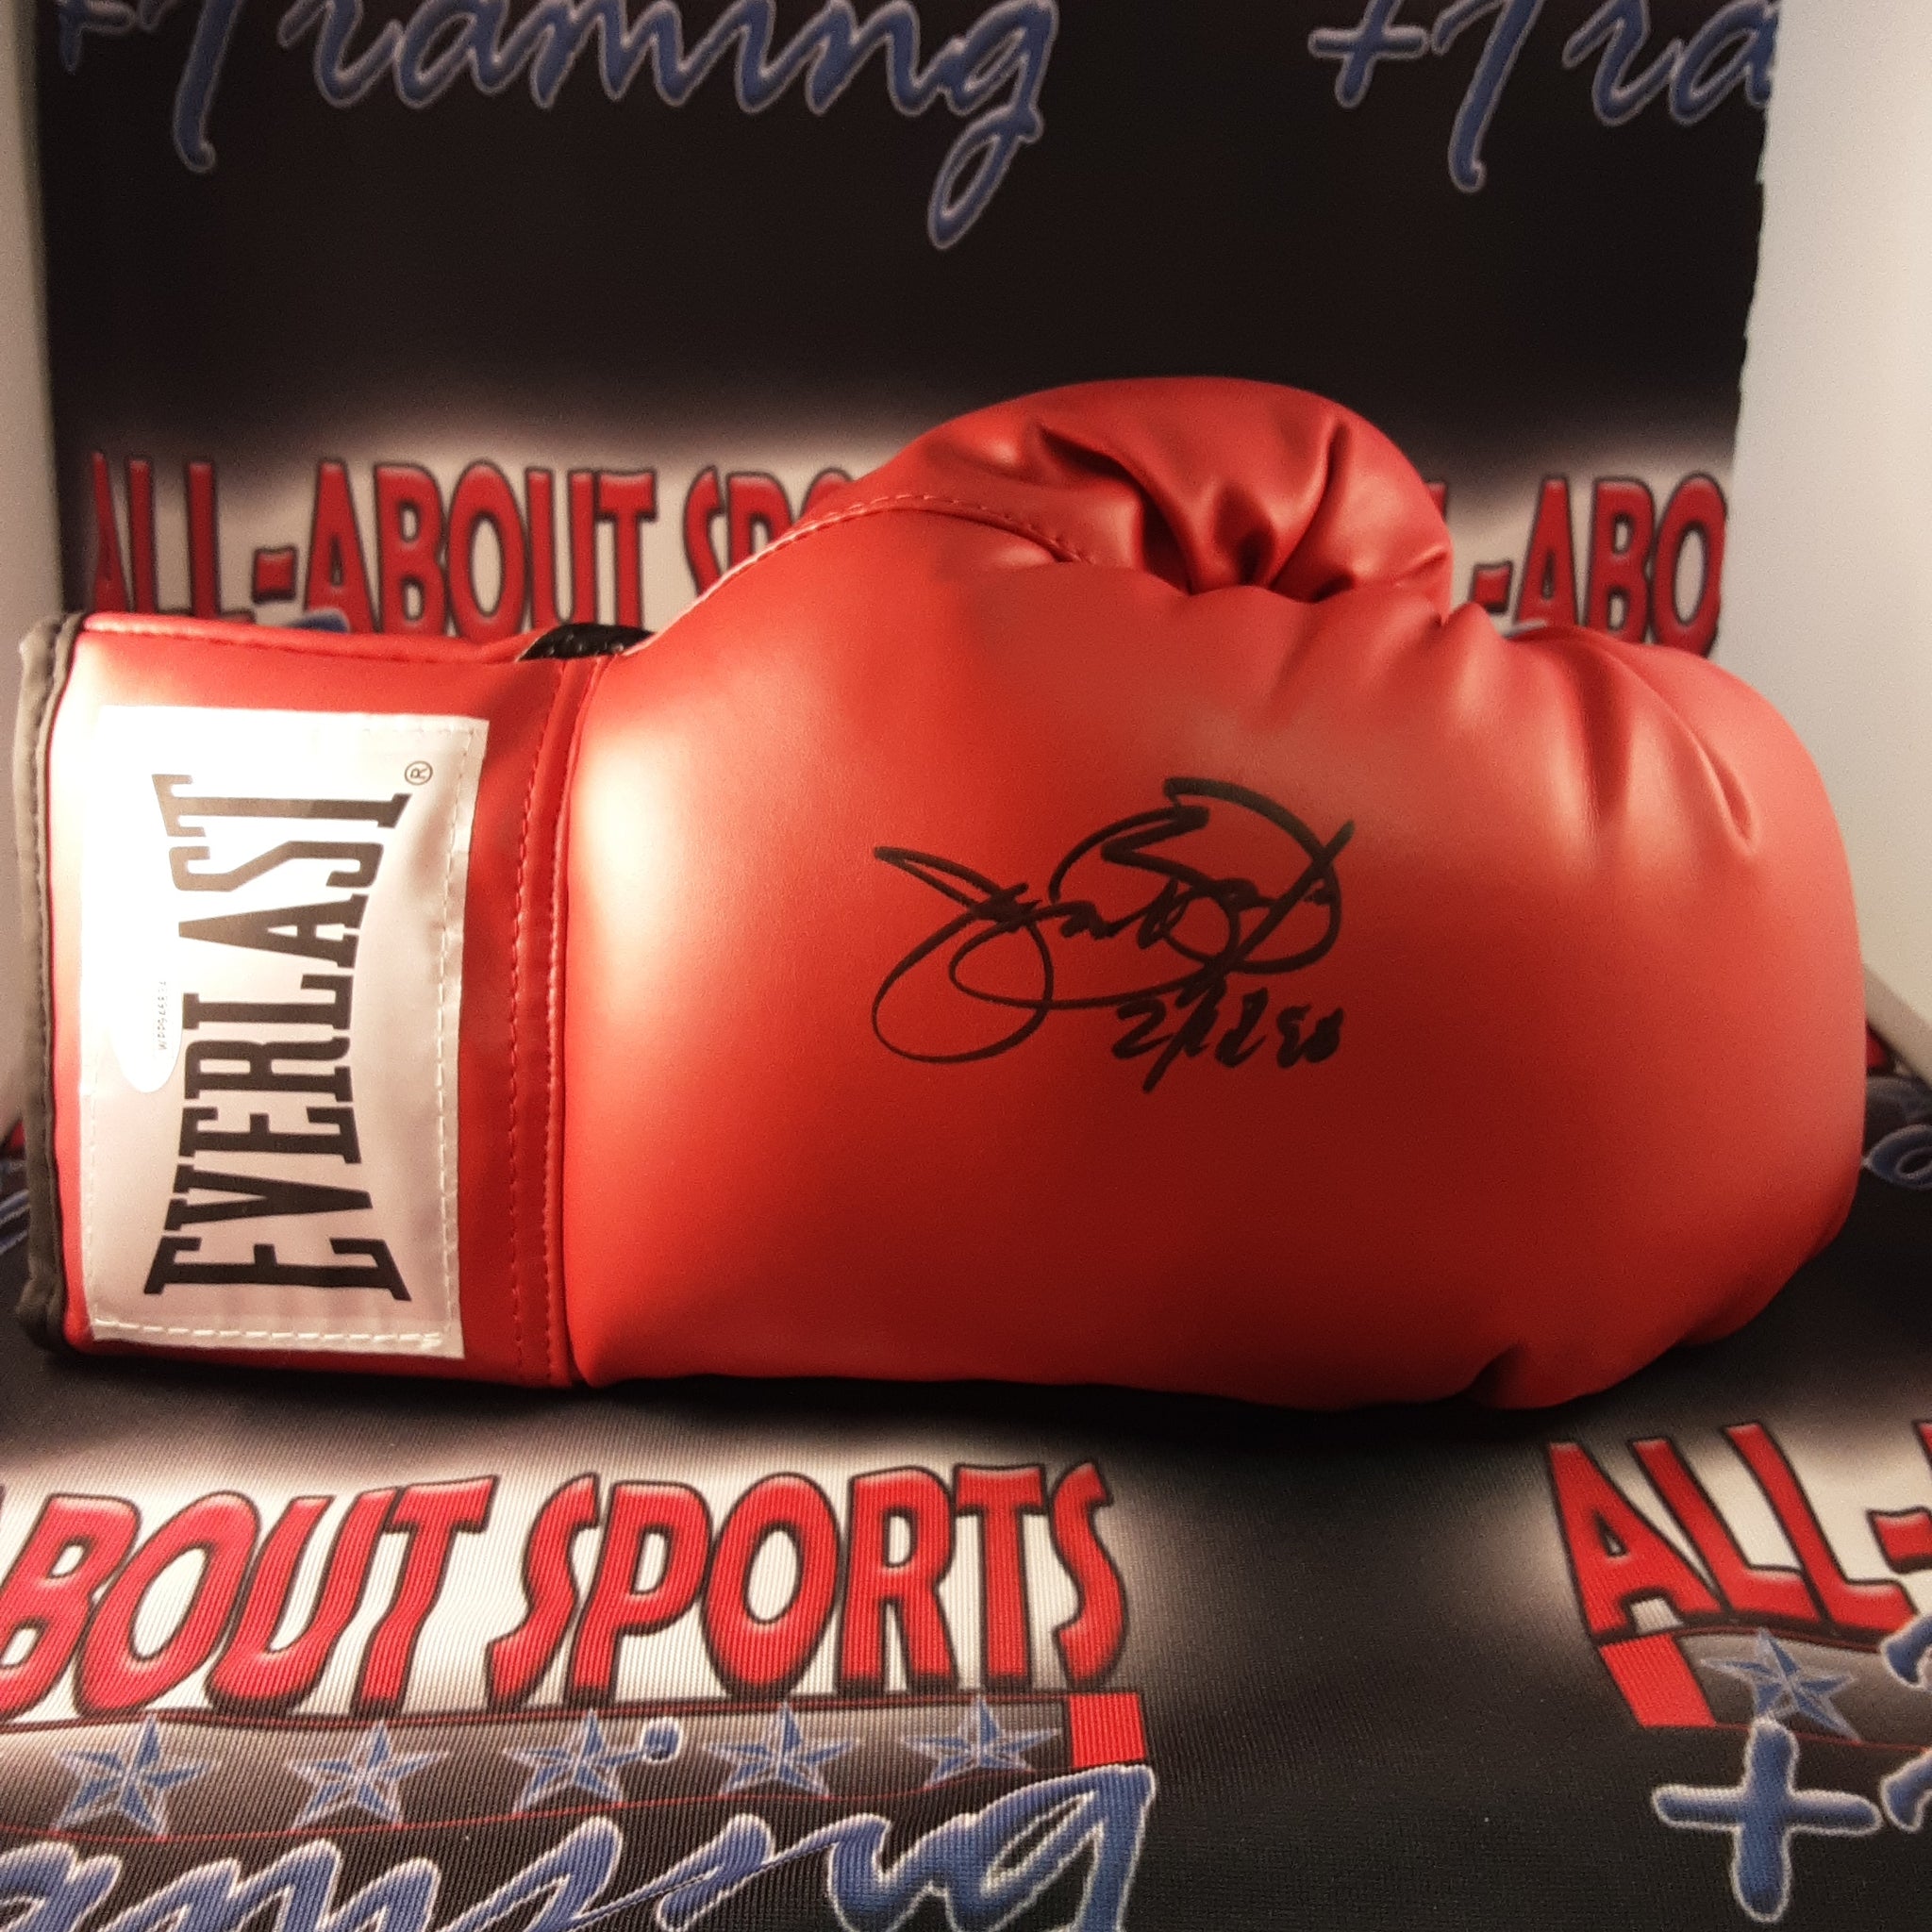 James Buster Douglas Authentic Signed Boxing Glove w/Inscription Autographed JSA